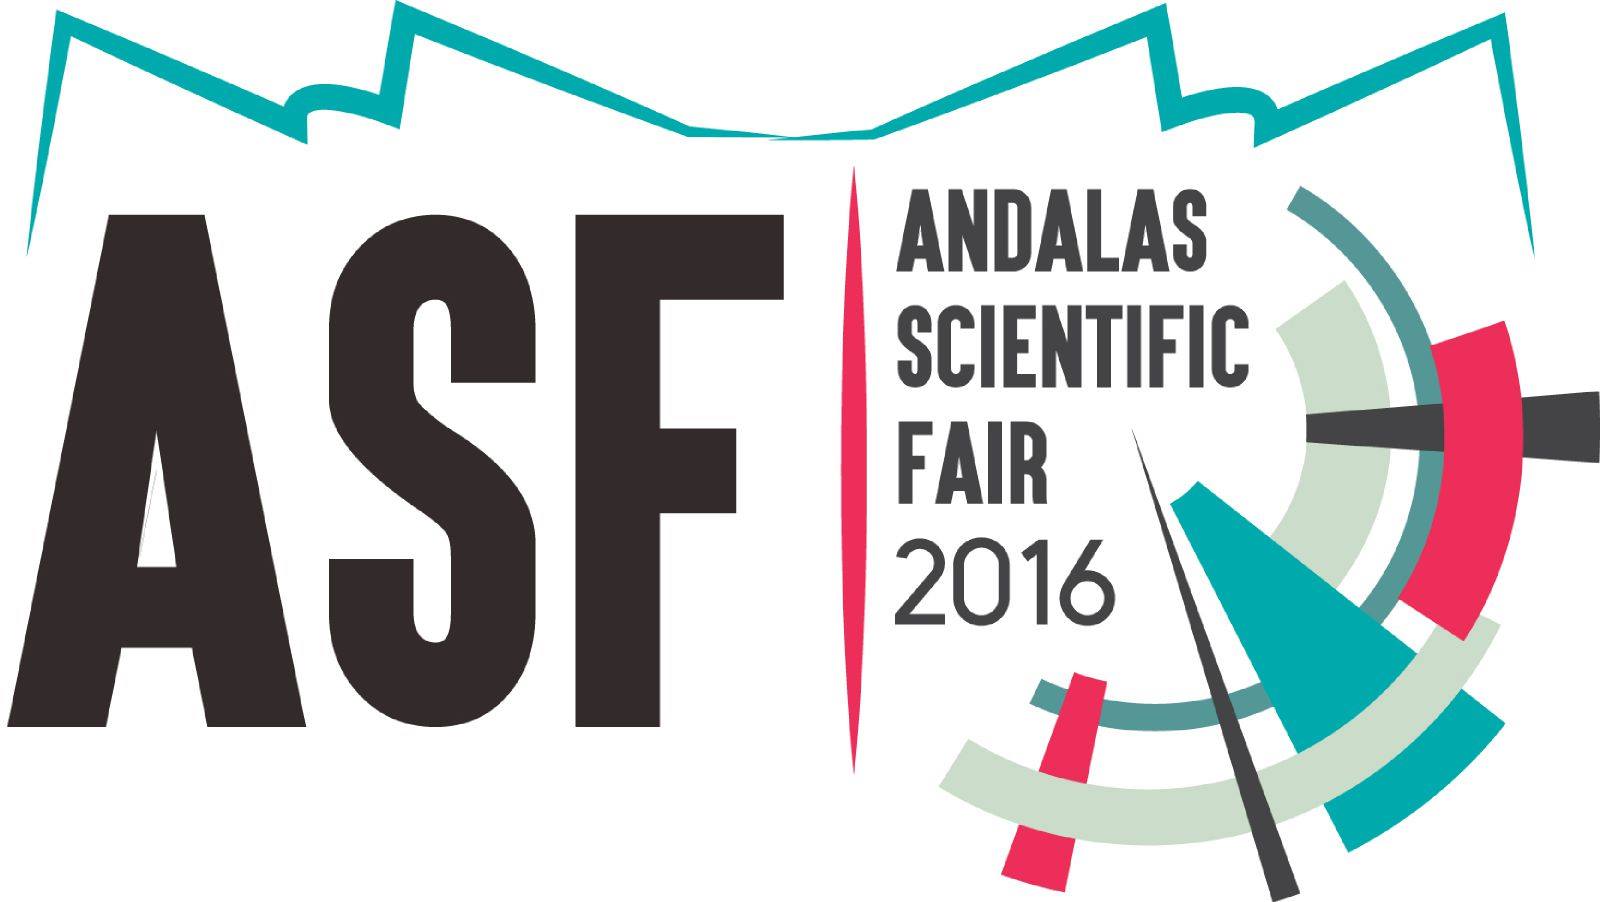 Andalas Scientific Fair 2016